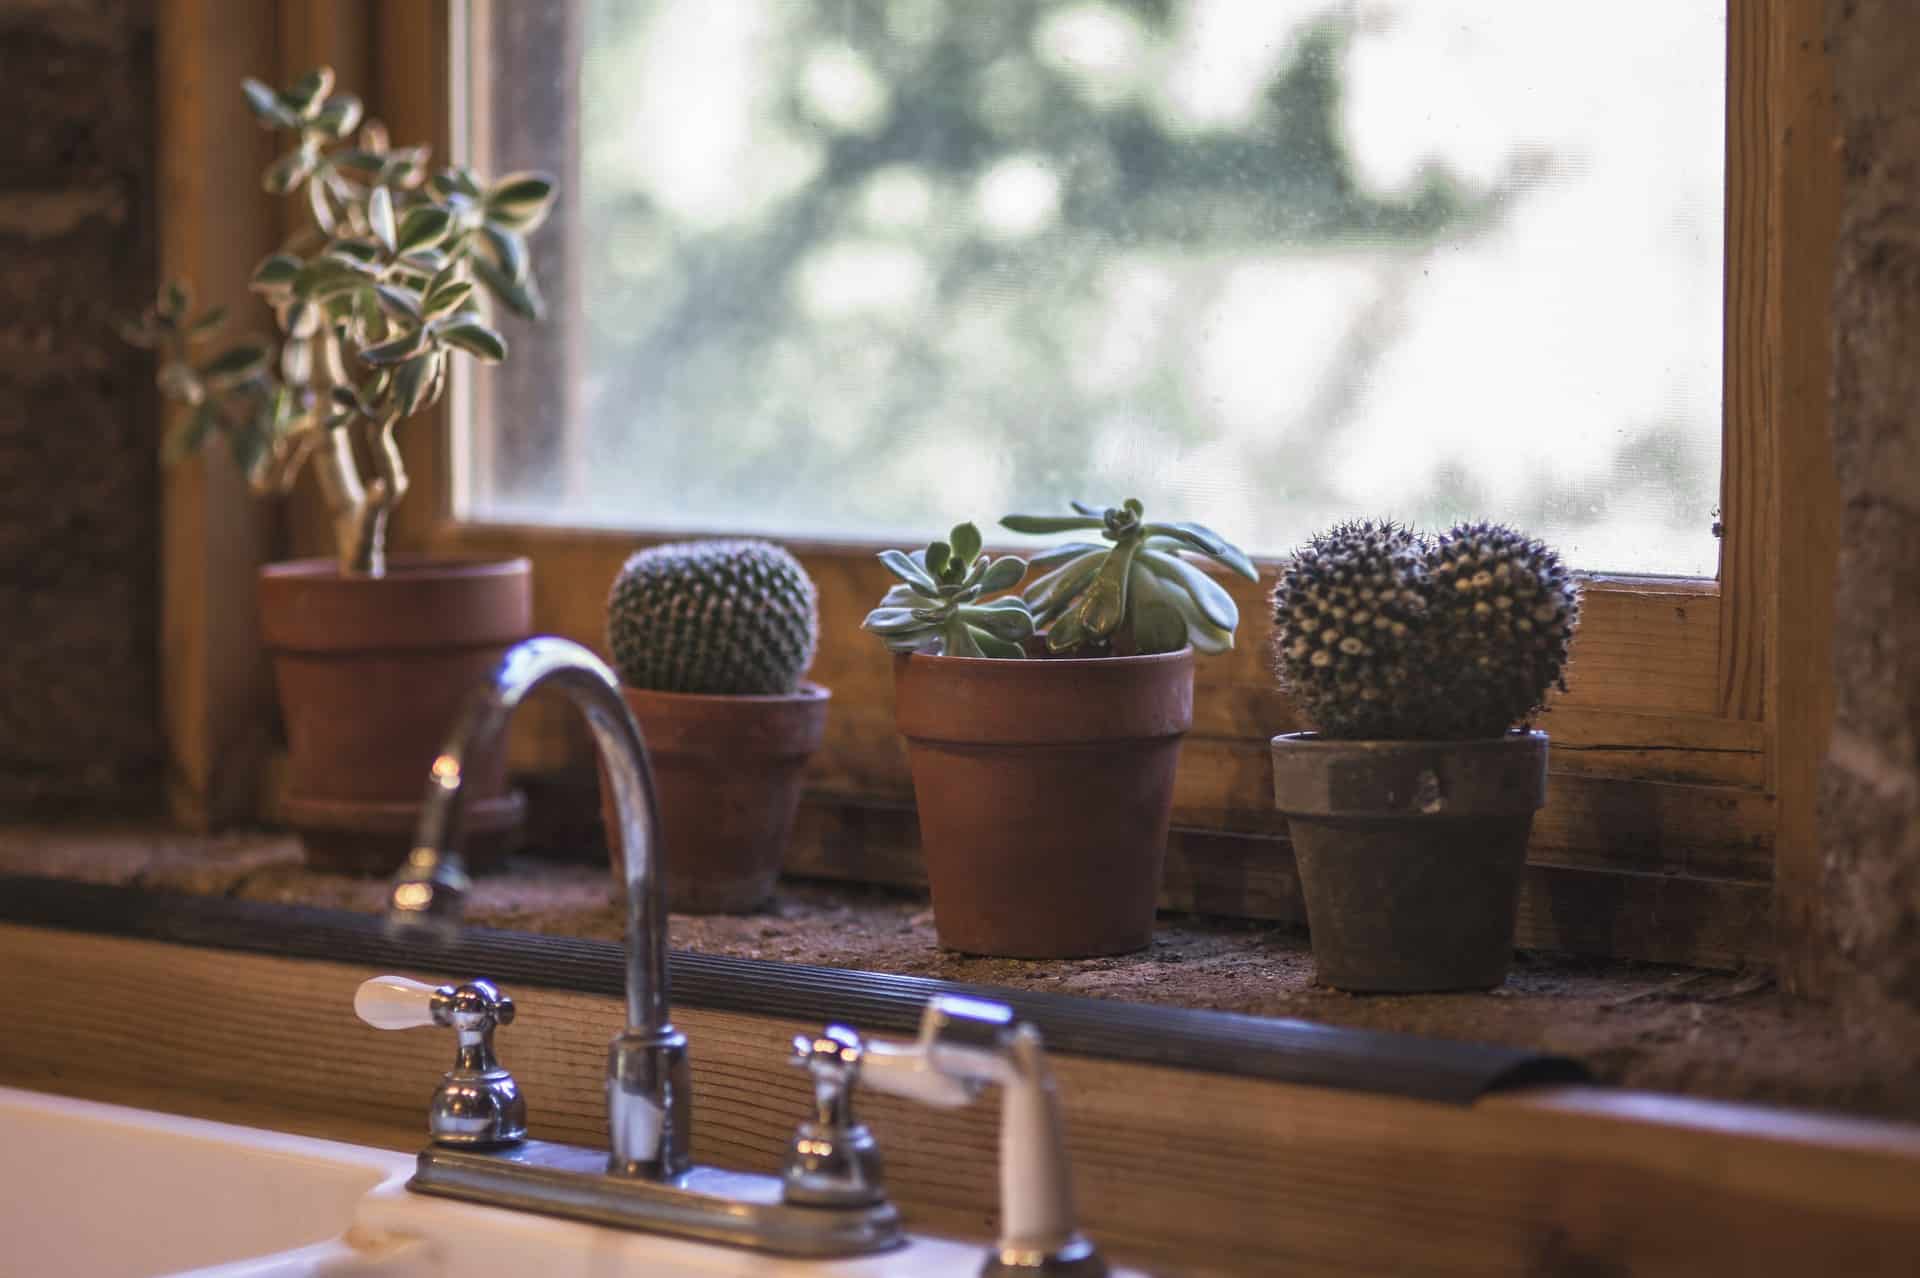 cactus on kitchen sill